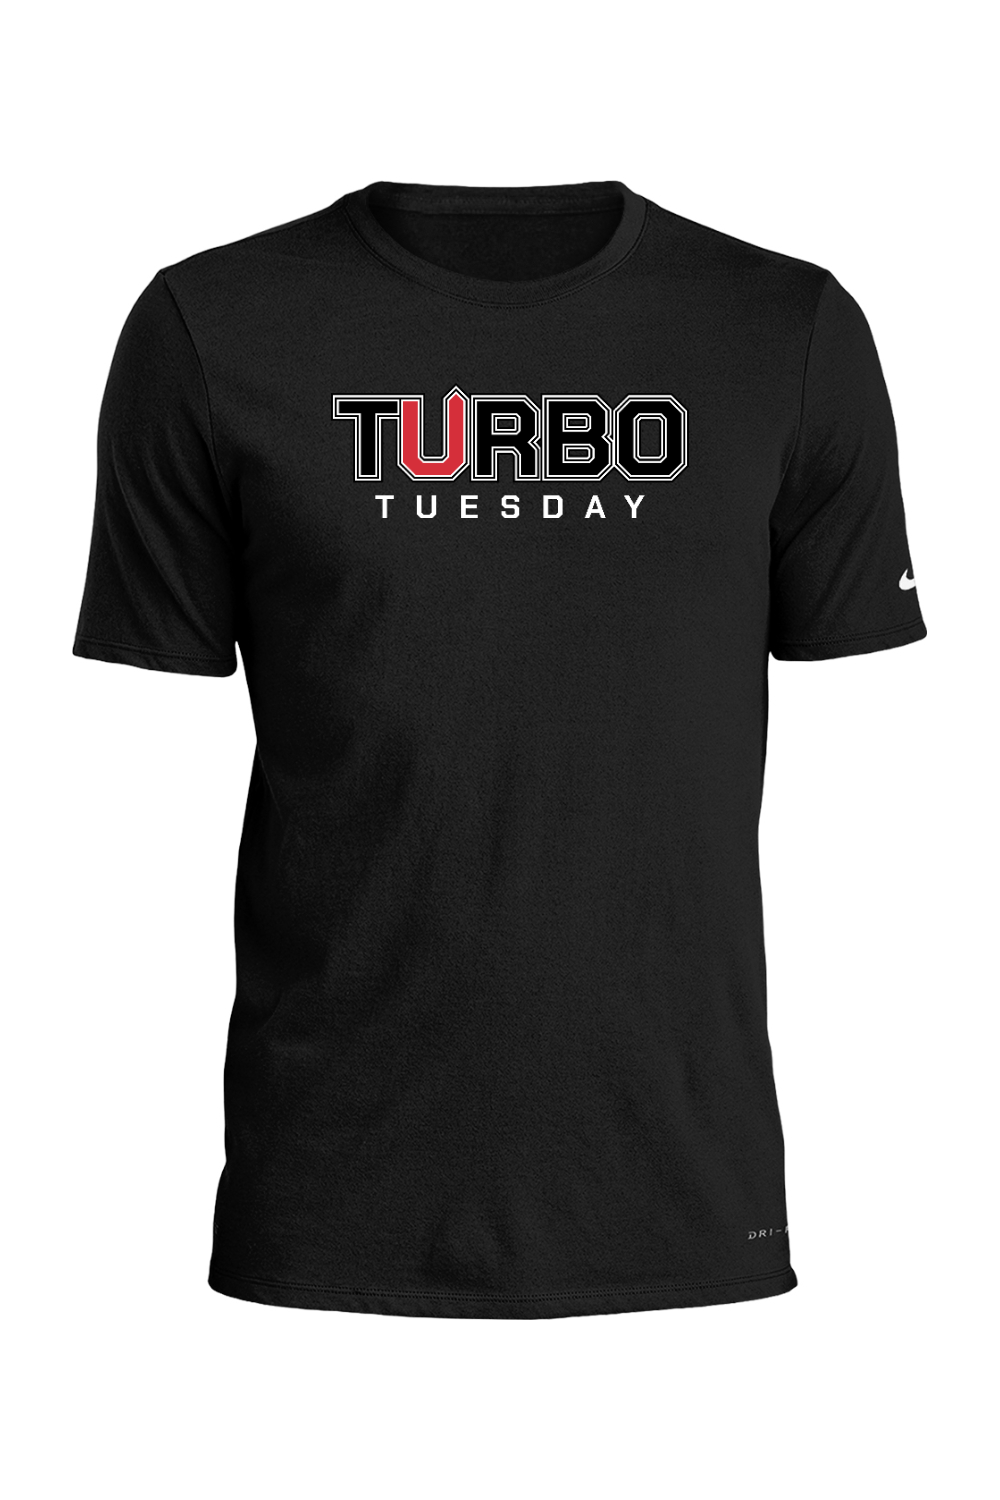 Turbo Tuesday Nike Dri-FIT Cotton/Poly Tee